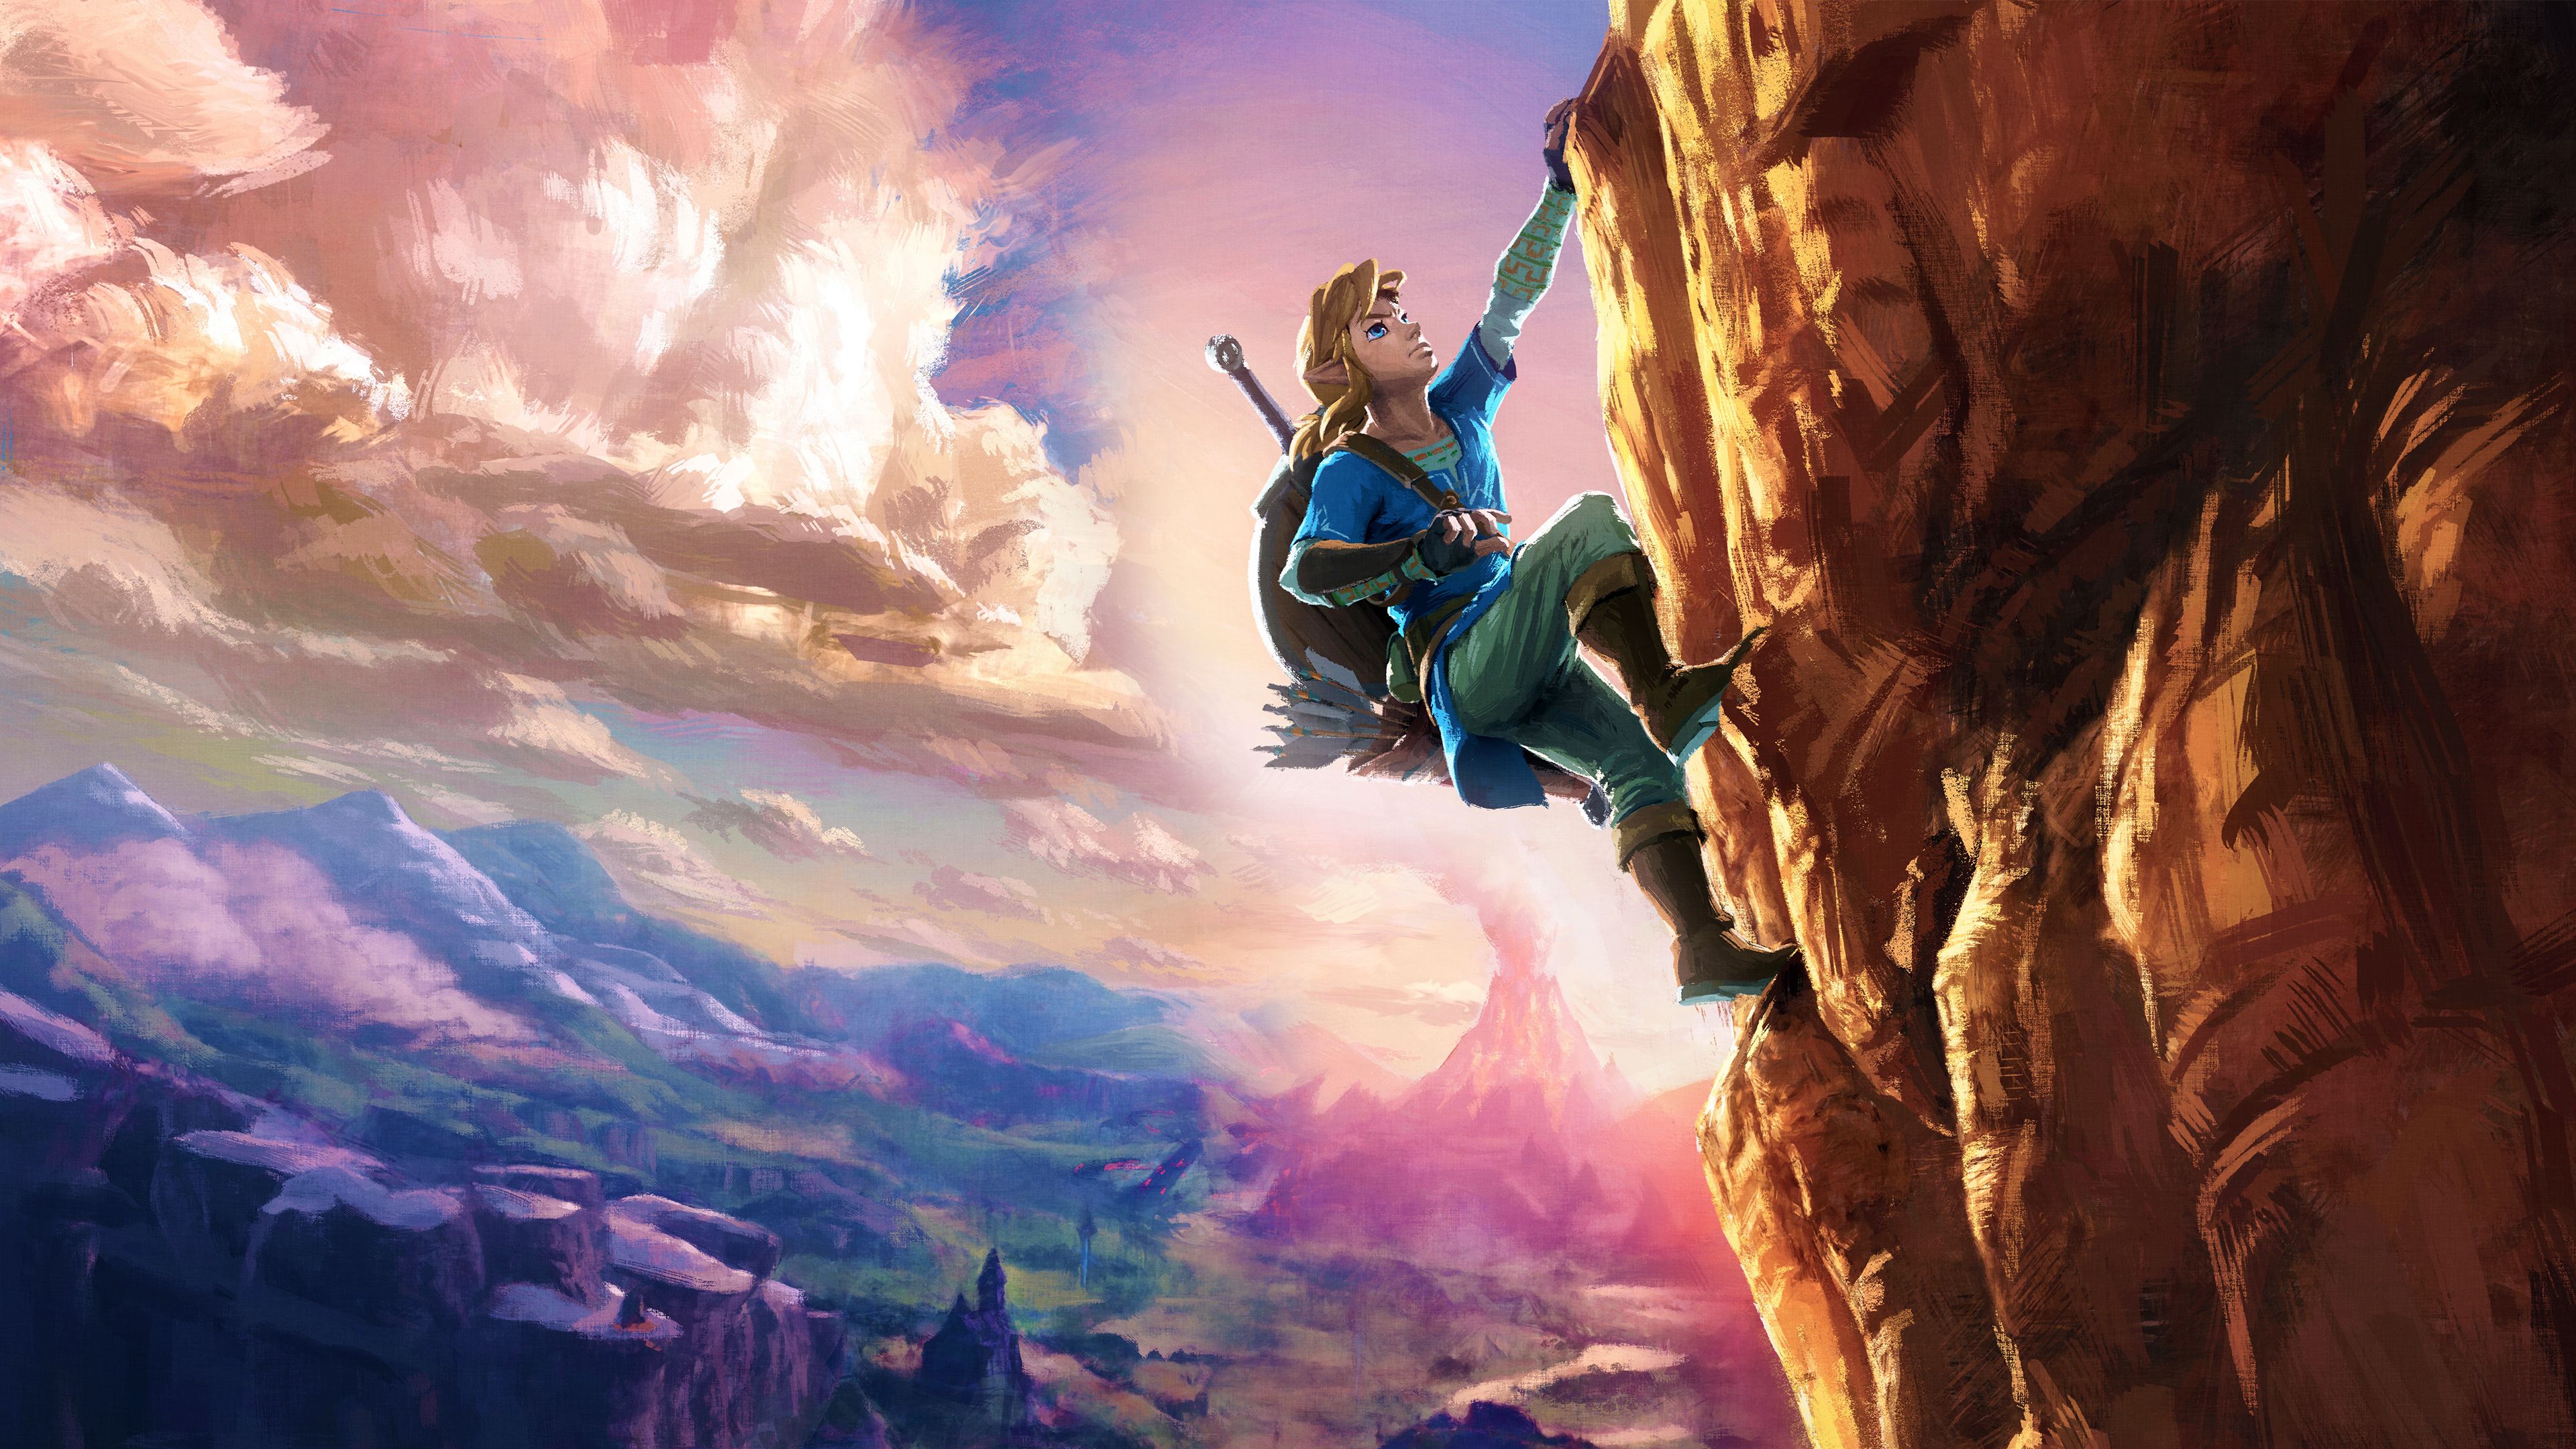 4K The Legend Of Zelda Breath Of The Wild Wallpaper HD